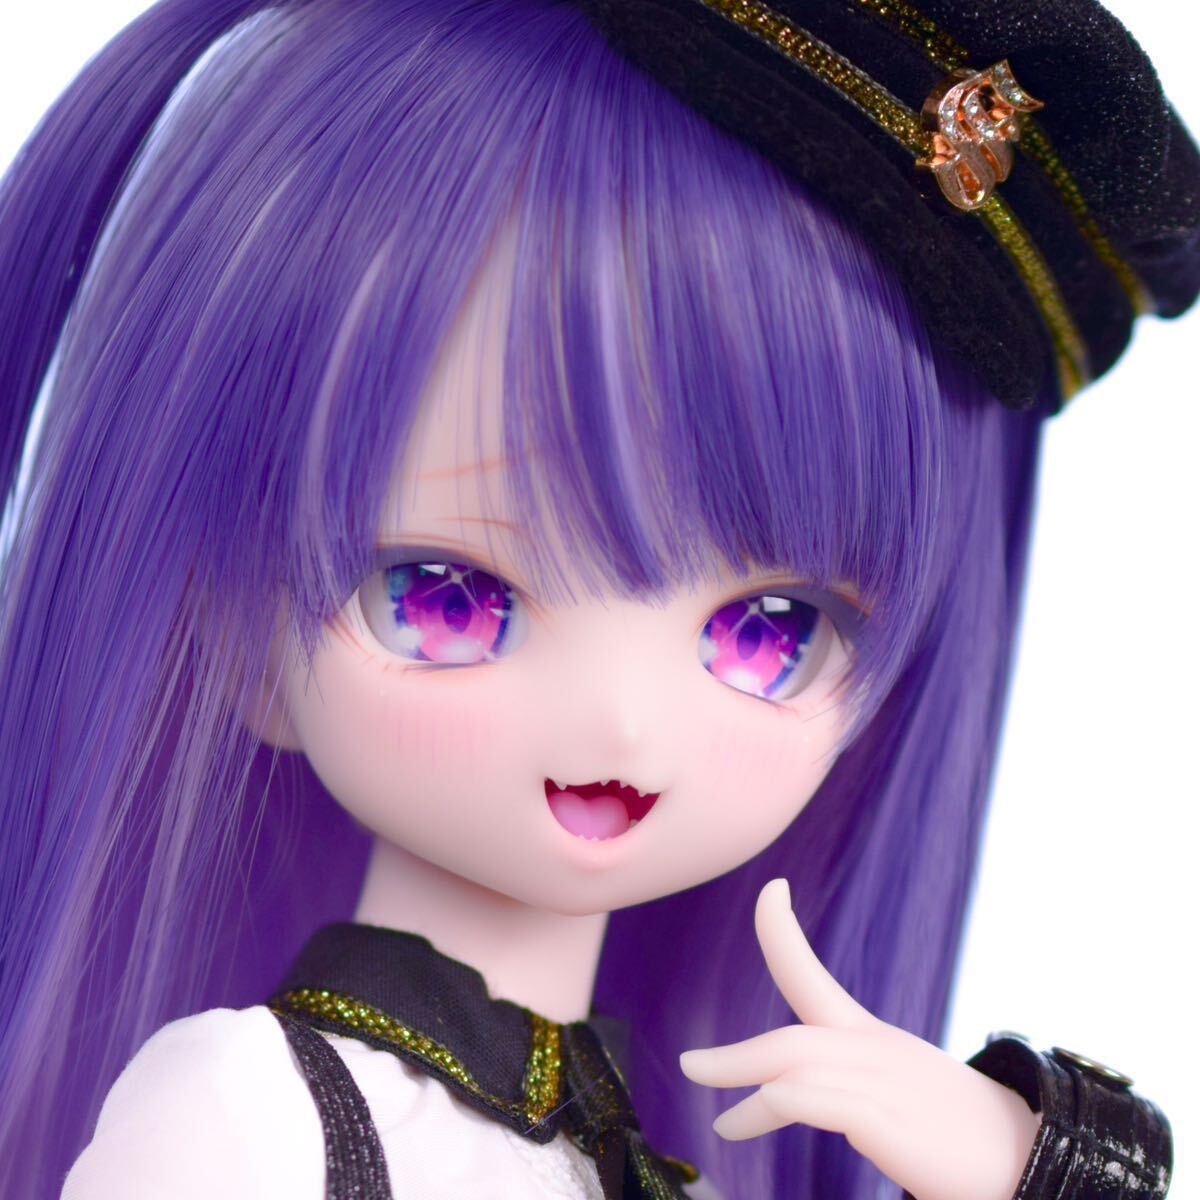 [Poko Adoru] DDH-01 Halbweiße Haut, benutzerdefinierter Kopf MDD Dollfie Dream Doll, Puppe, Charakterpuppe, Dollfie-Traum, Teile